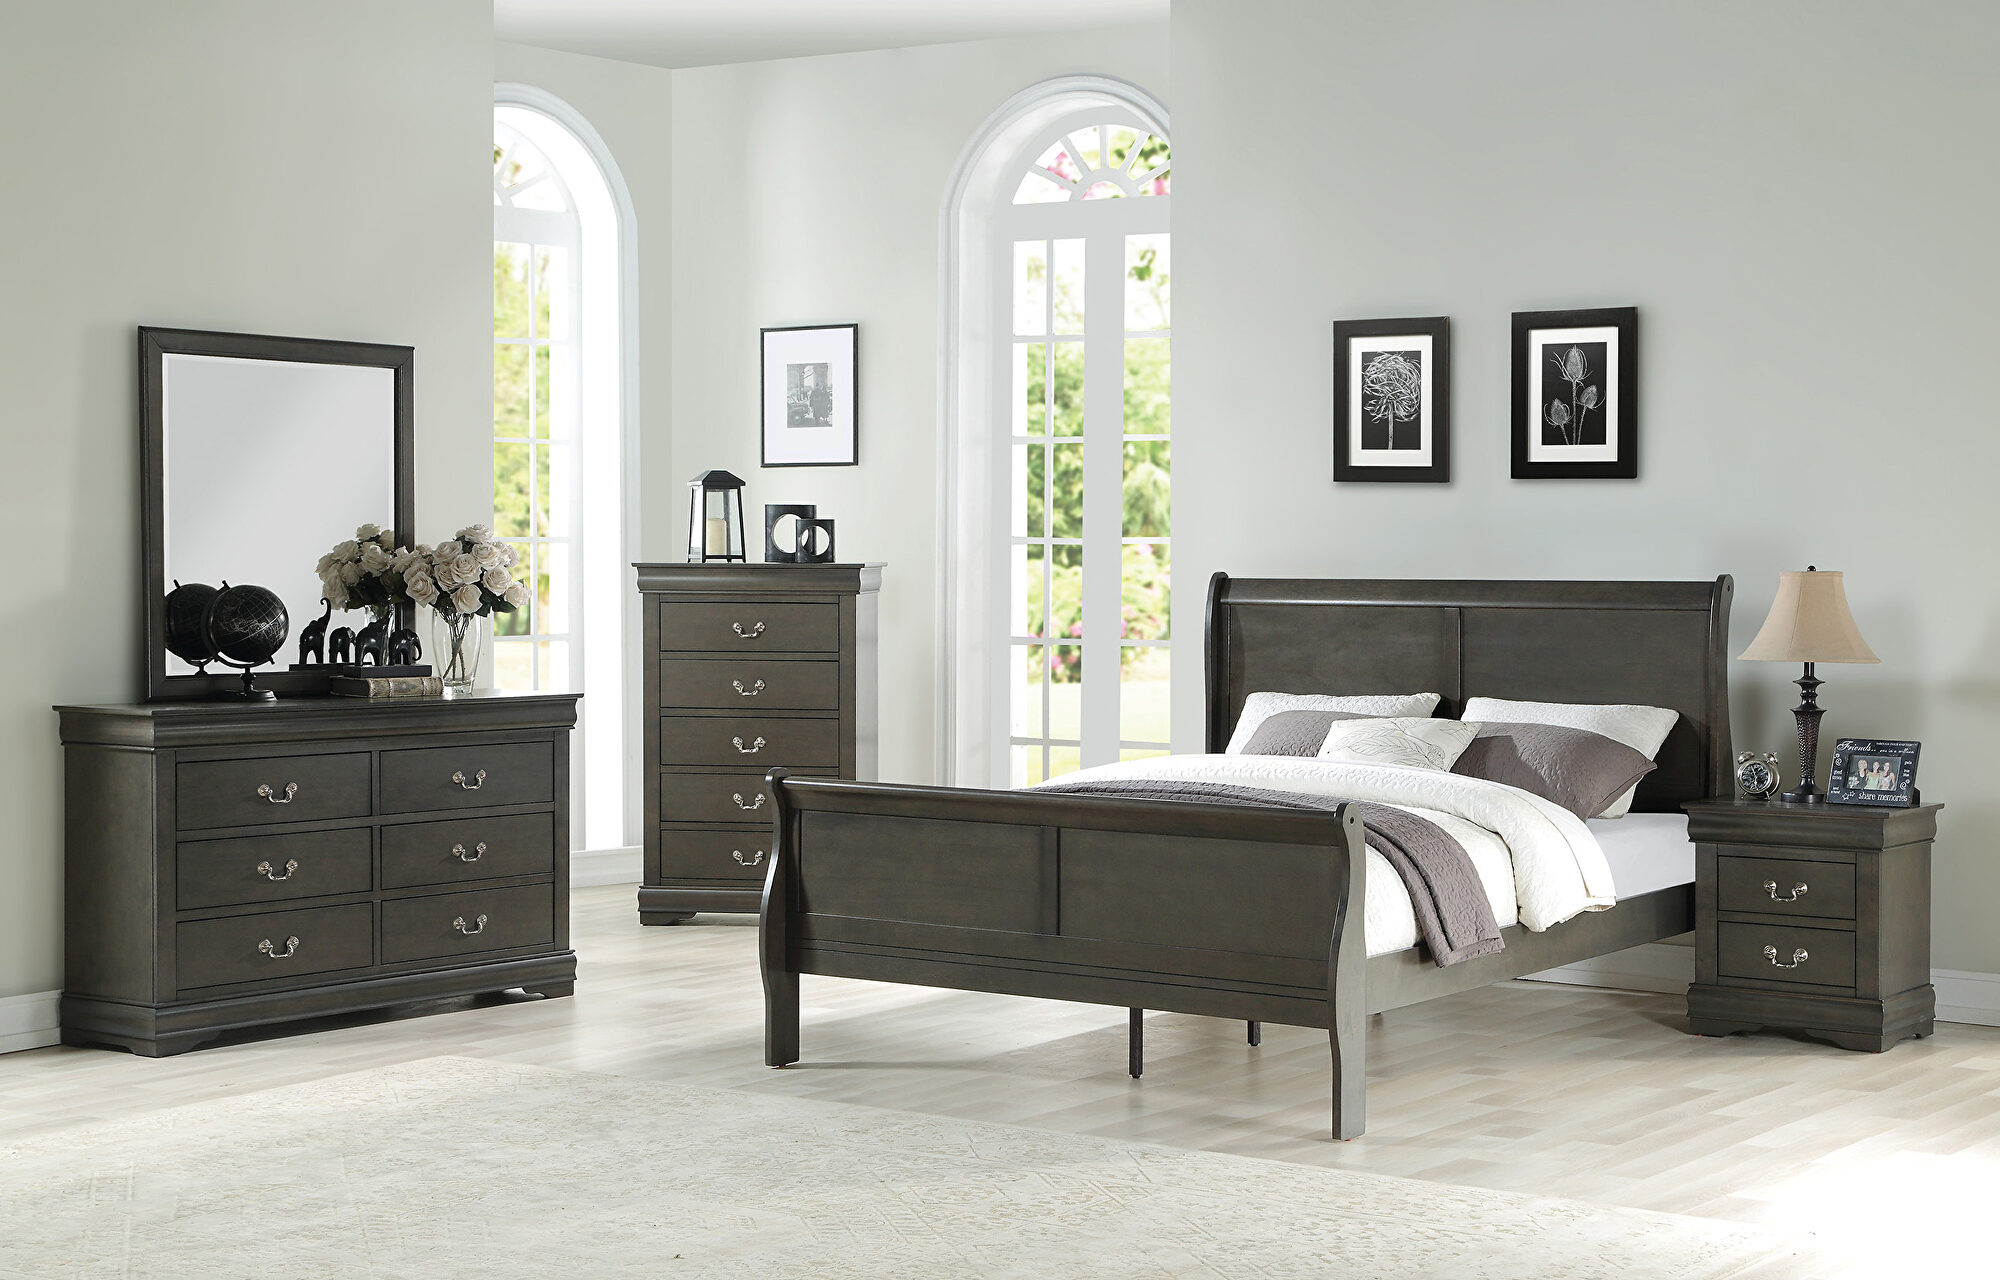 Acme Furniture Bedroom Louis Philippe Eastern King Bed 23857EK